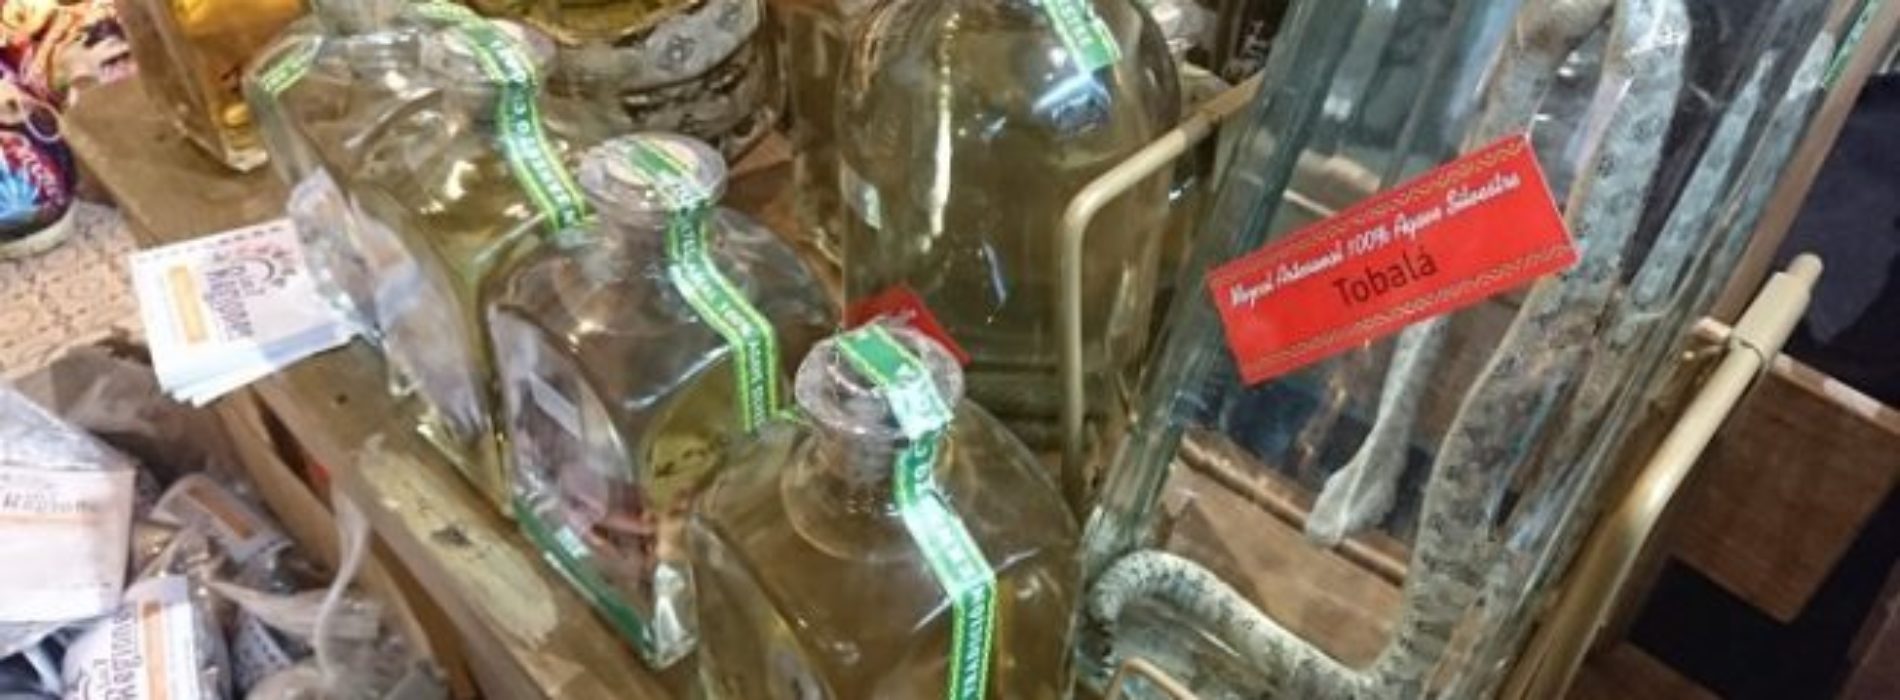 PROFEPA asegura reptiles y arácnidos en botellas de mezcal,
comercializados en mercado de Oaxaca